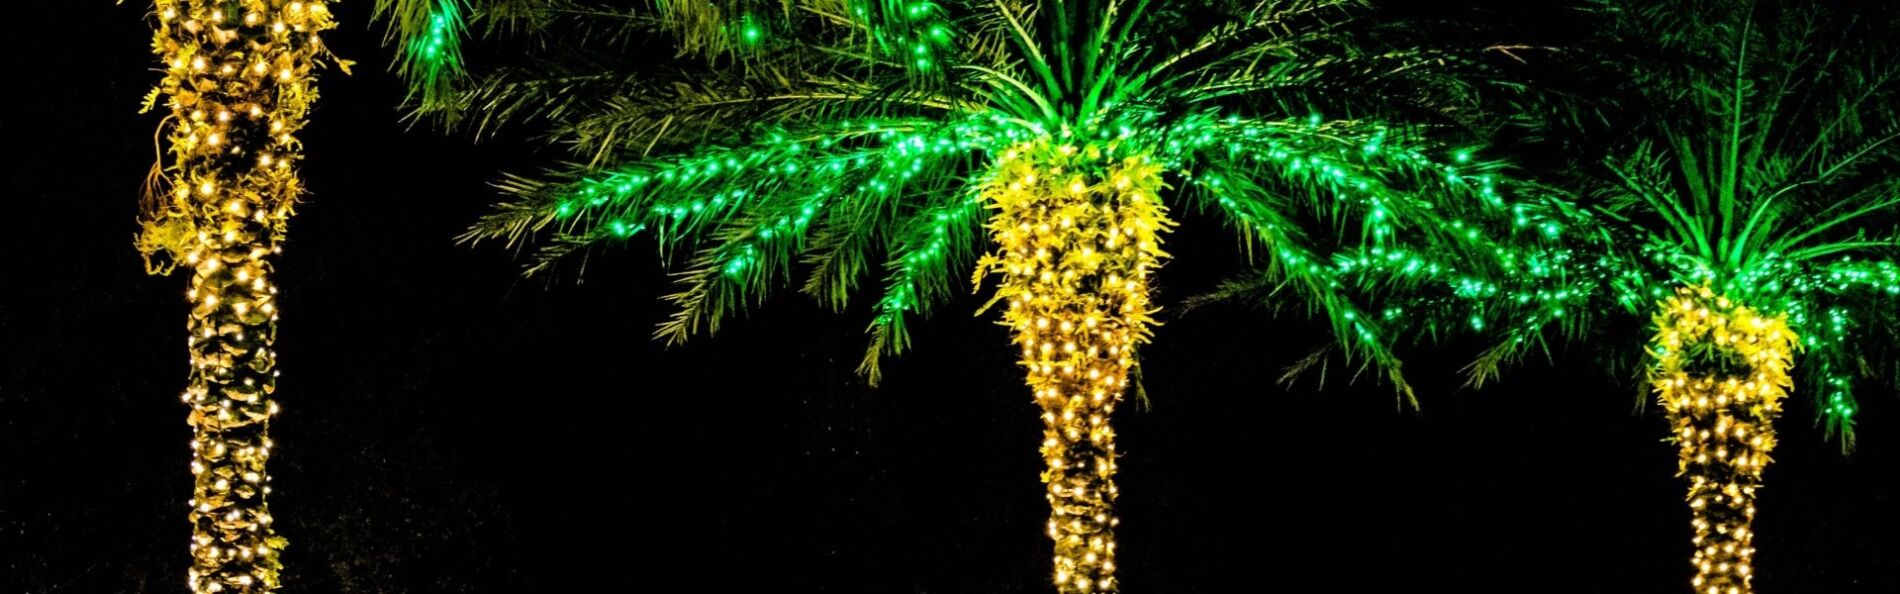 christmas lights on palm trees